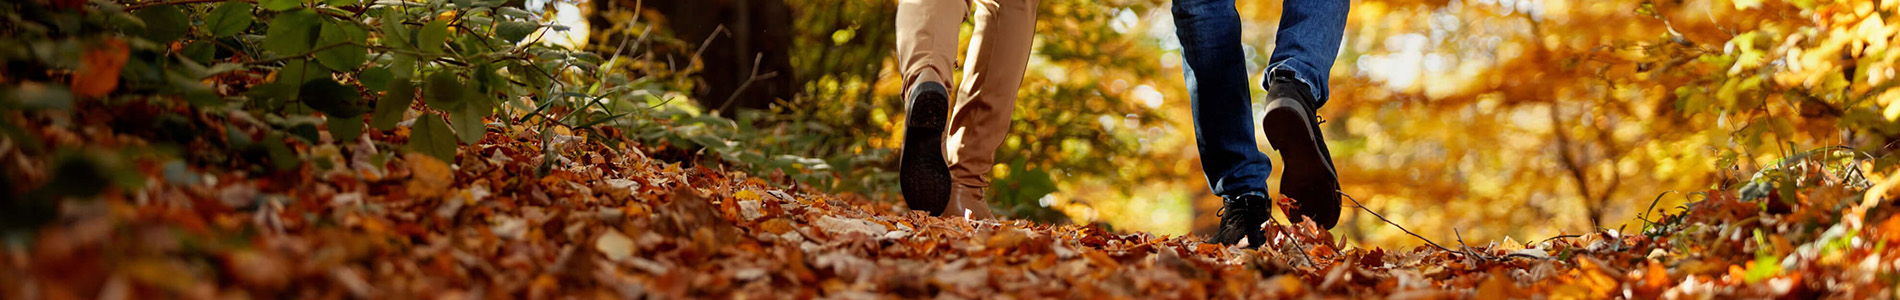 Herbstspaziergänge ohne kalte Füße